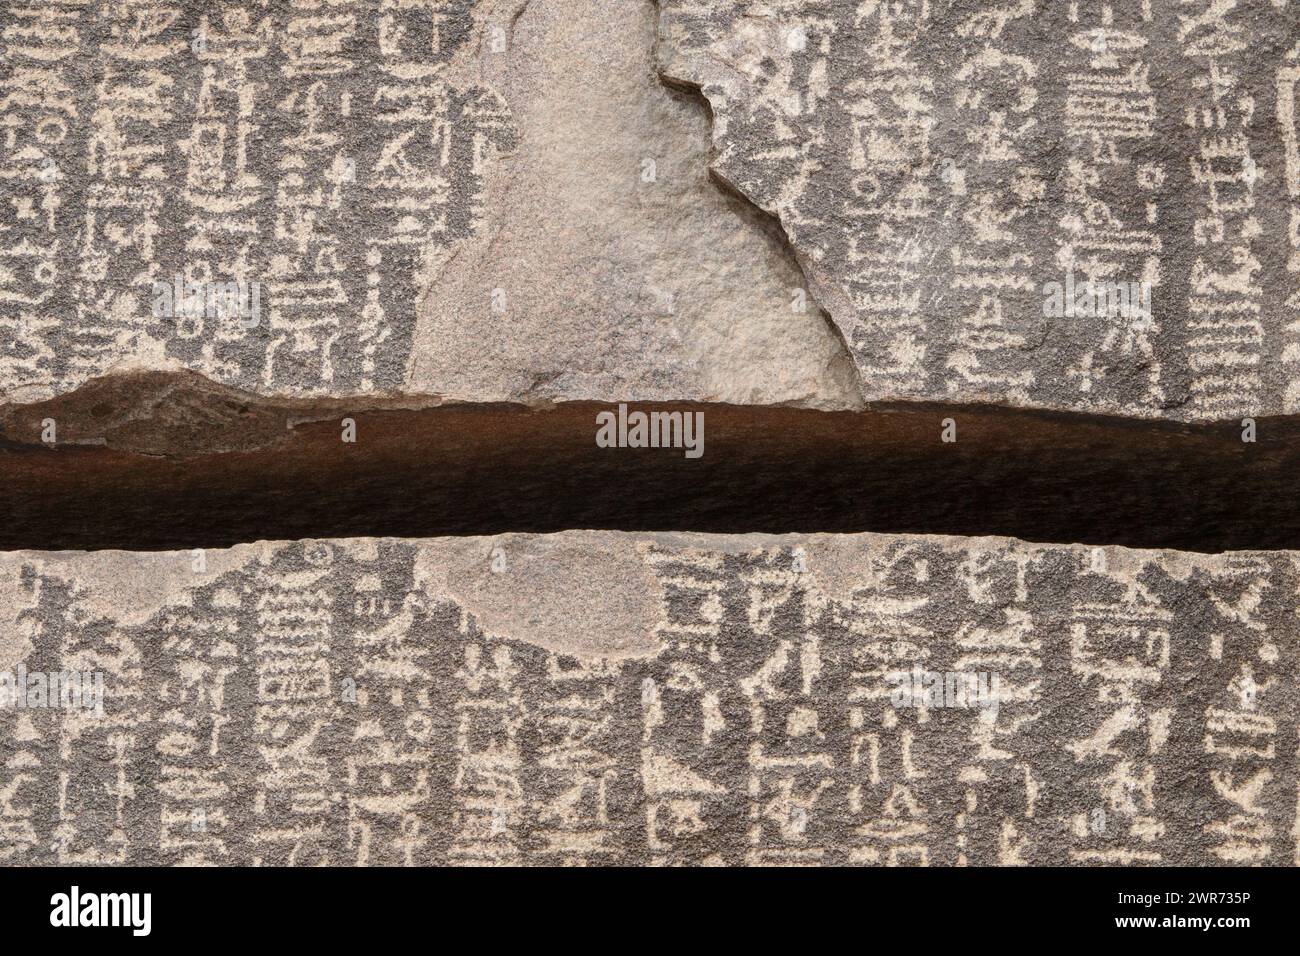 Primo piano della fessura nella stele della carestia sull'isola di Sehel con iscrizioni tolemaiche relative a sette anni di carestia durante la III dinastia. Foto Stock